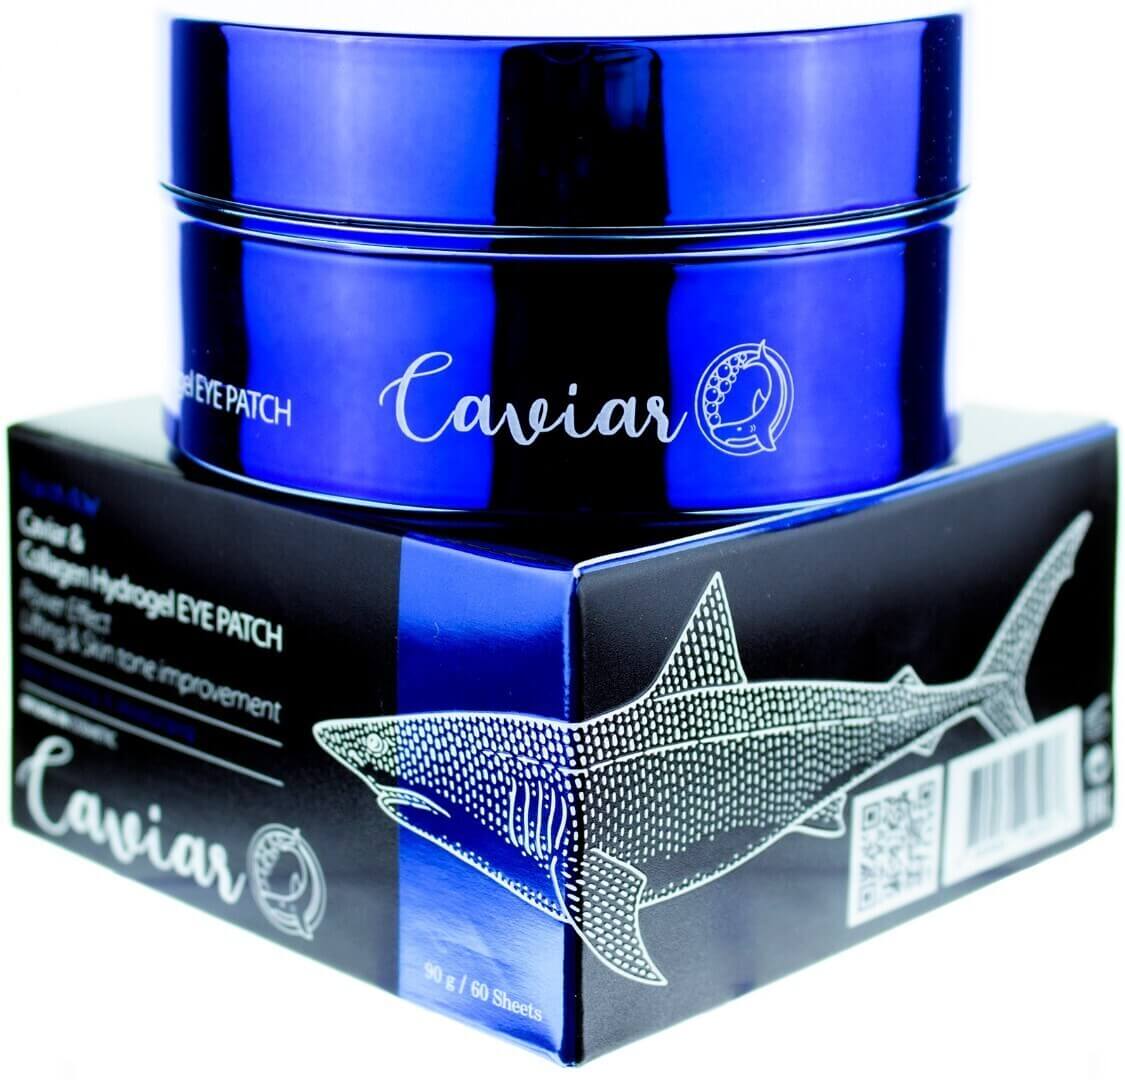 Caviar & Collagen Hydrogel Eye Patch [FarmStay]